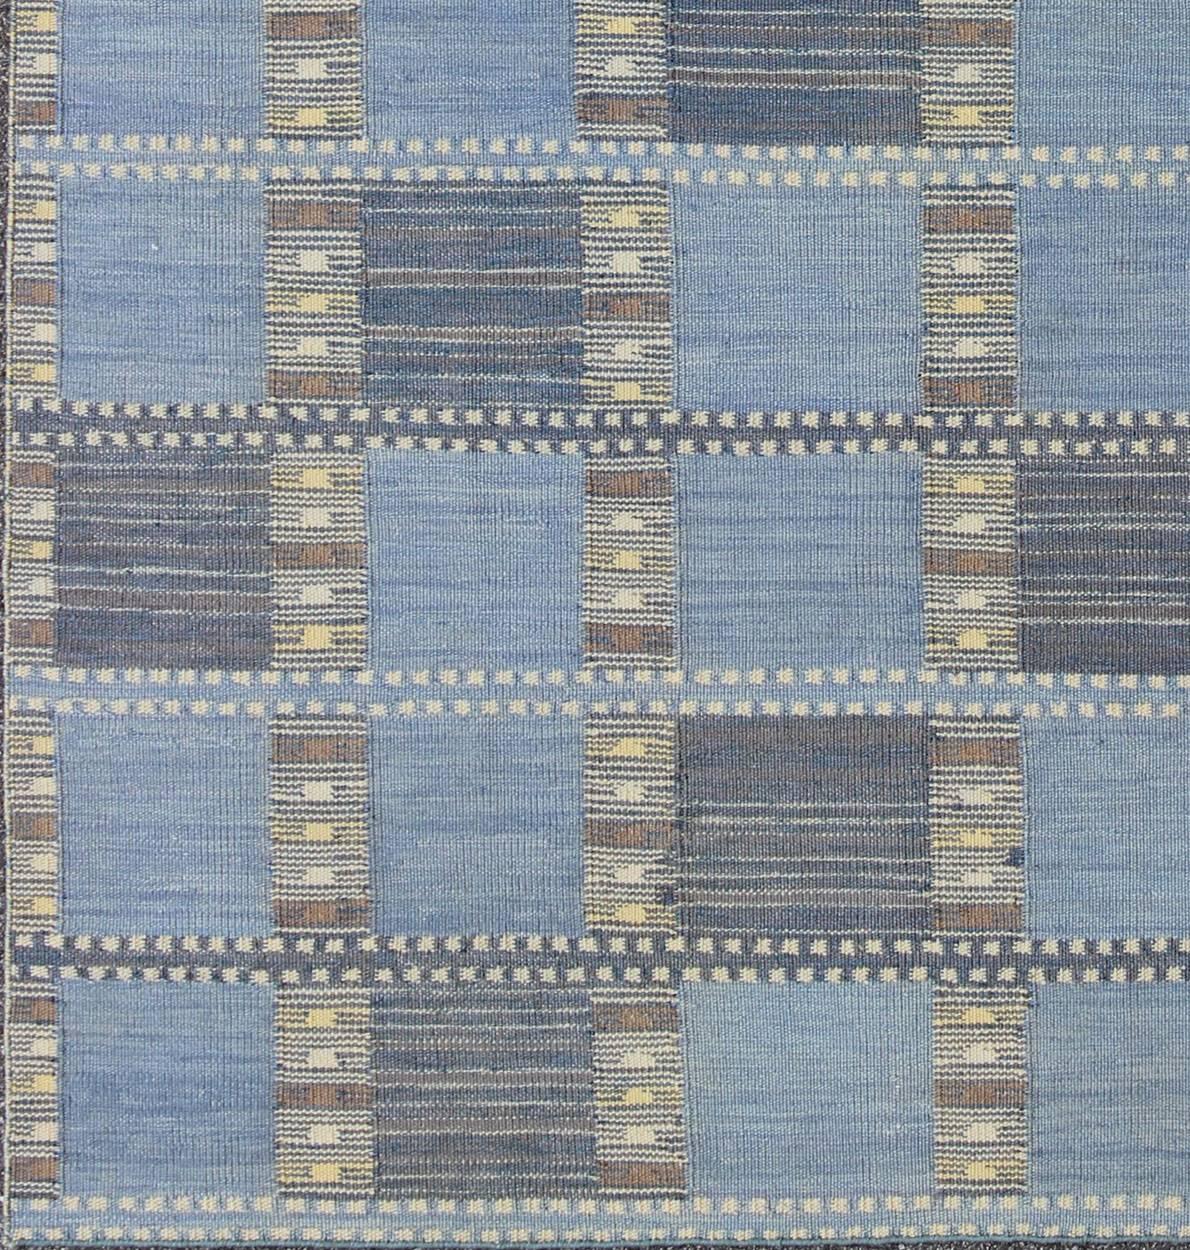 Dieser skandinavische Teppich mit Flachgewebe-Muster ist von den Arbeiten schwedischer Textildesigner des frühen bis mittleren 20. Jahrhunderts inspiriert. Mit einer einzigartigen Mischung aus historischem und modernem Design ist diese dynamische